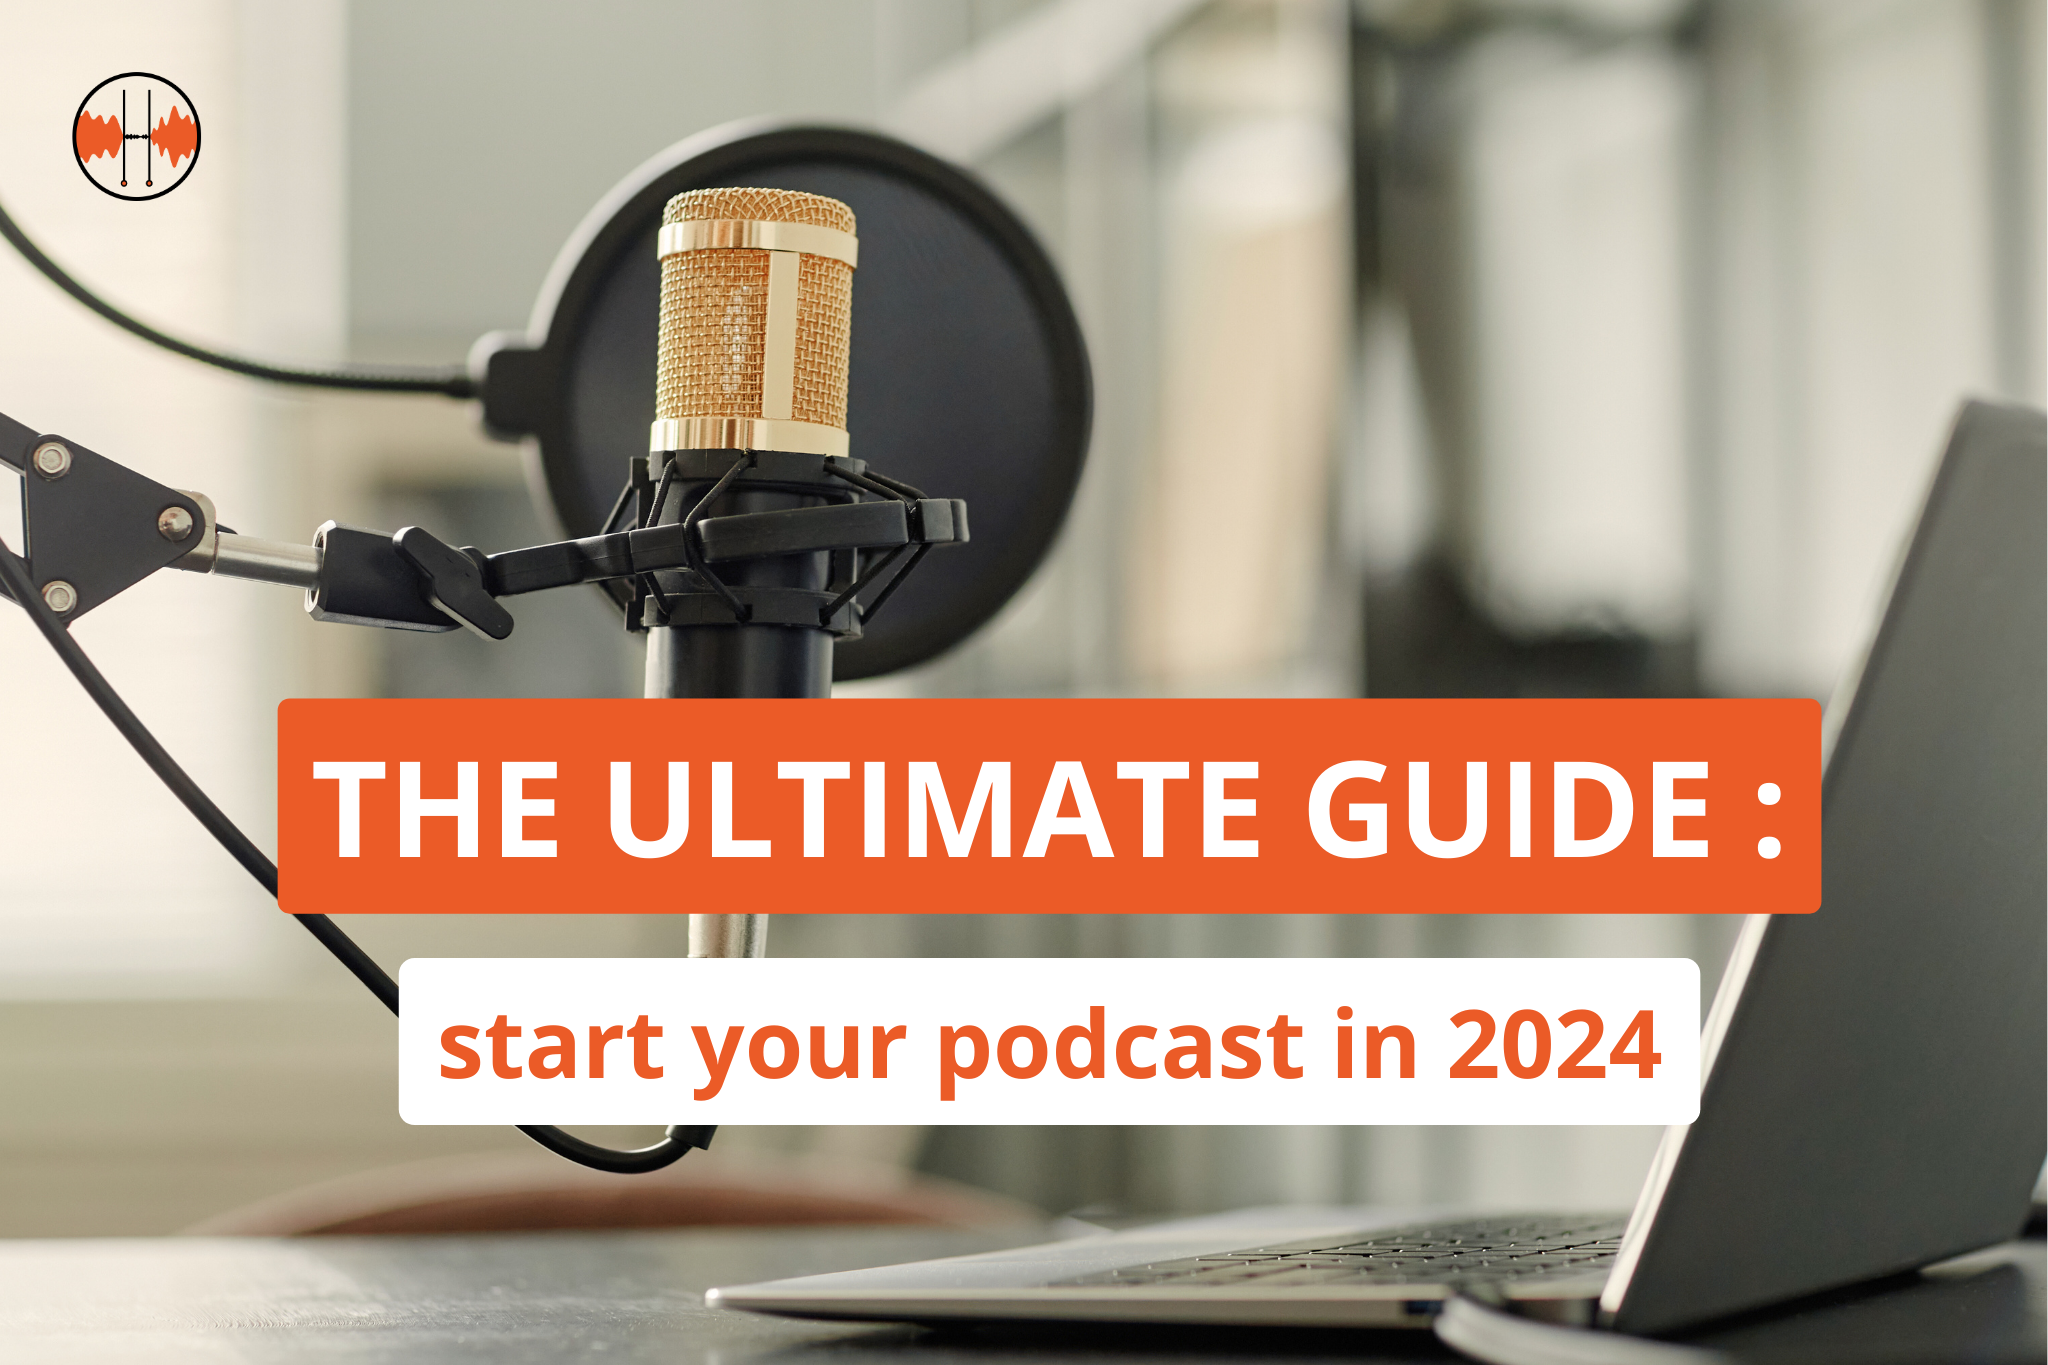 Le guide ultime pour démarrer votre podcast (2024)